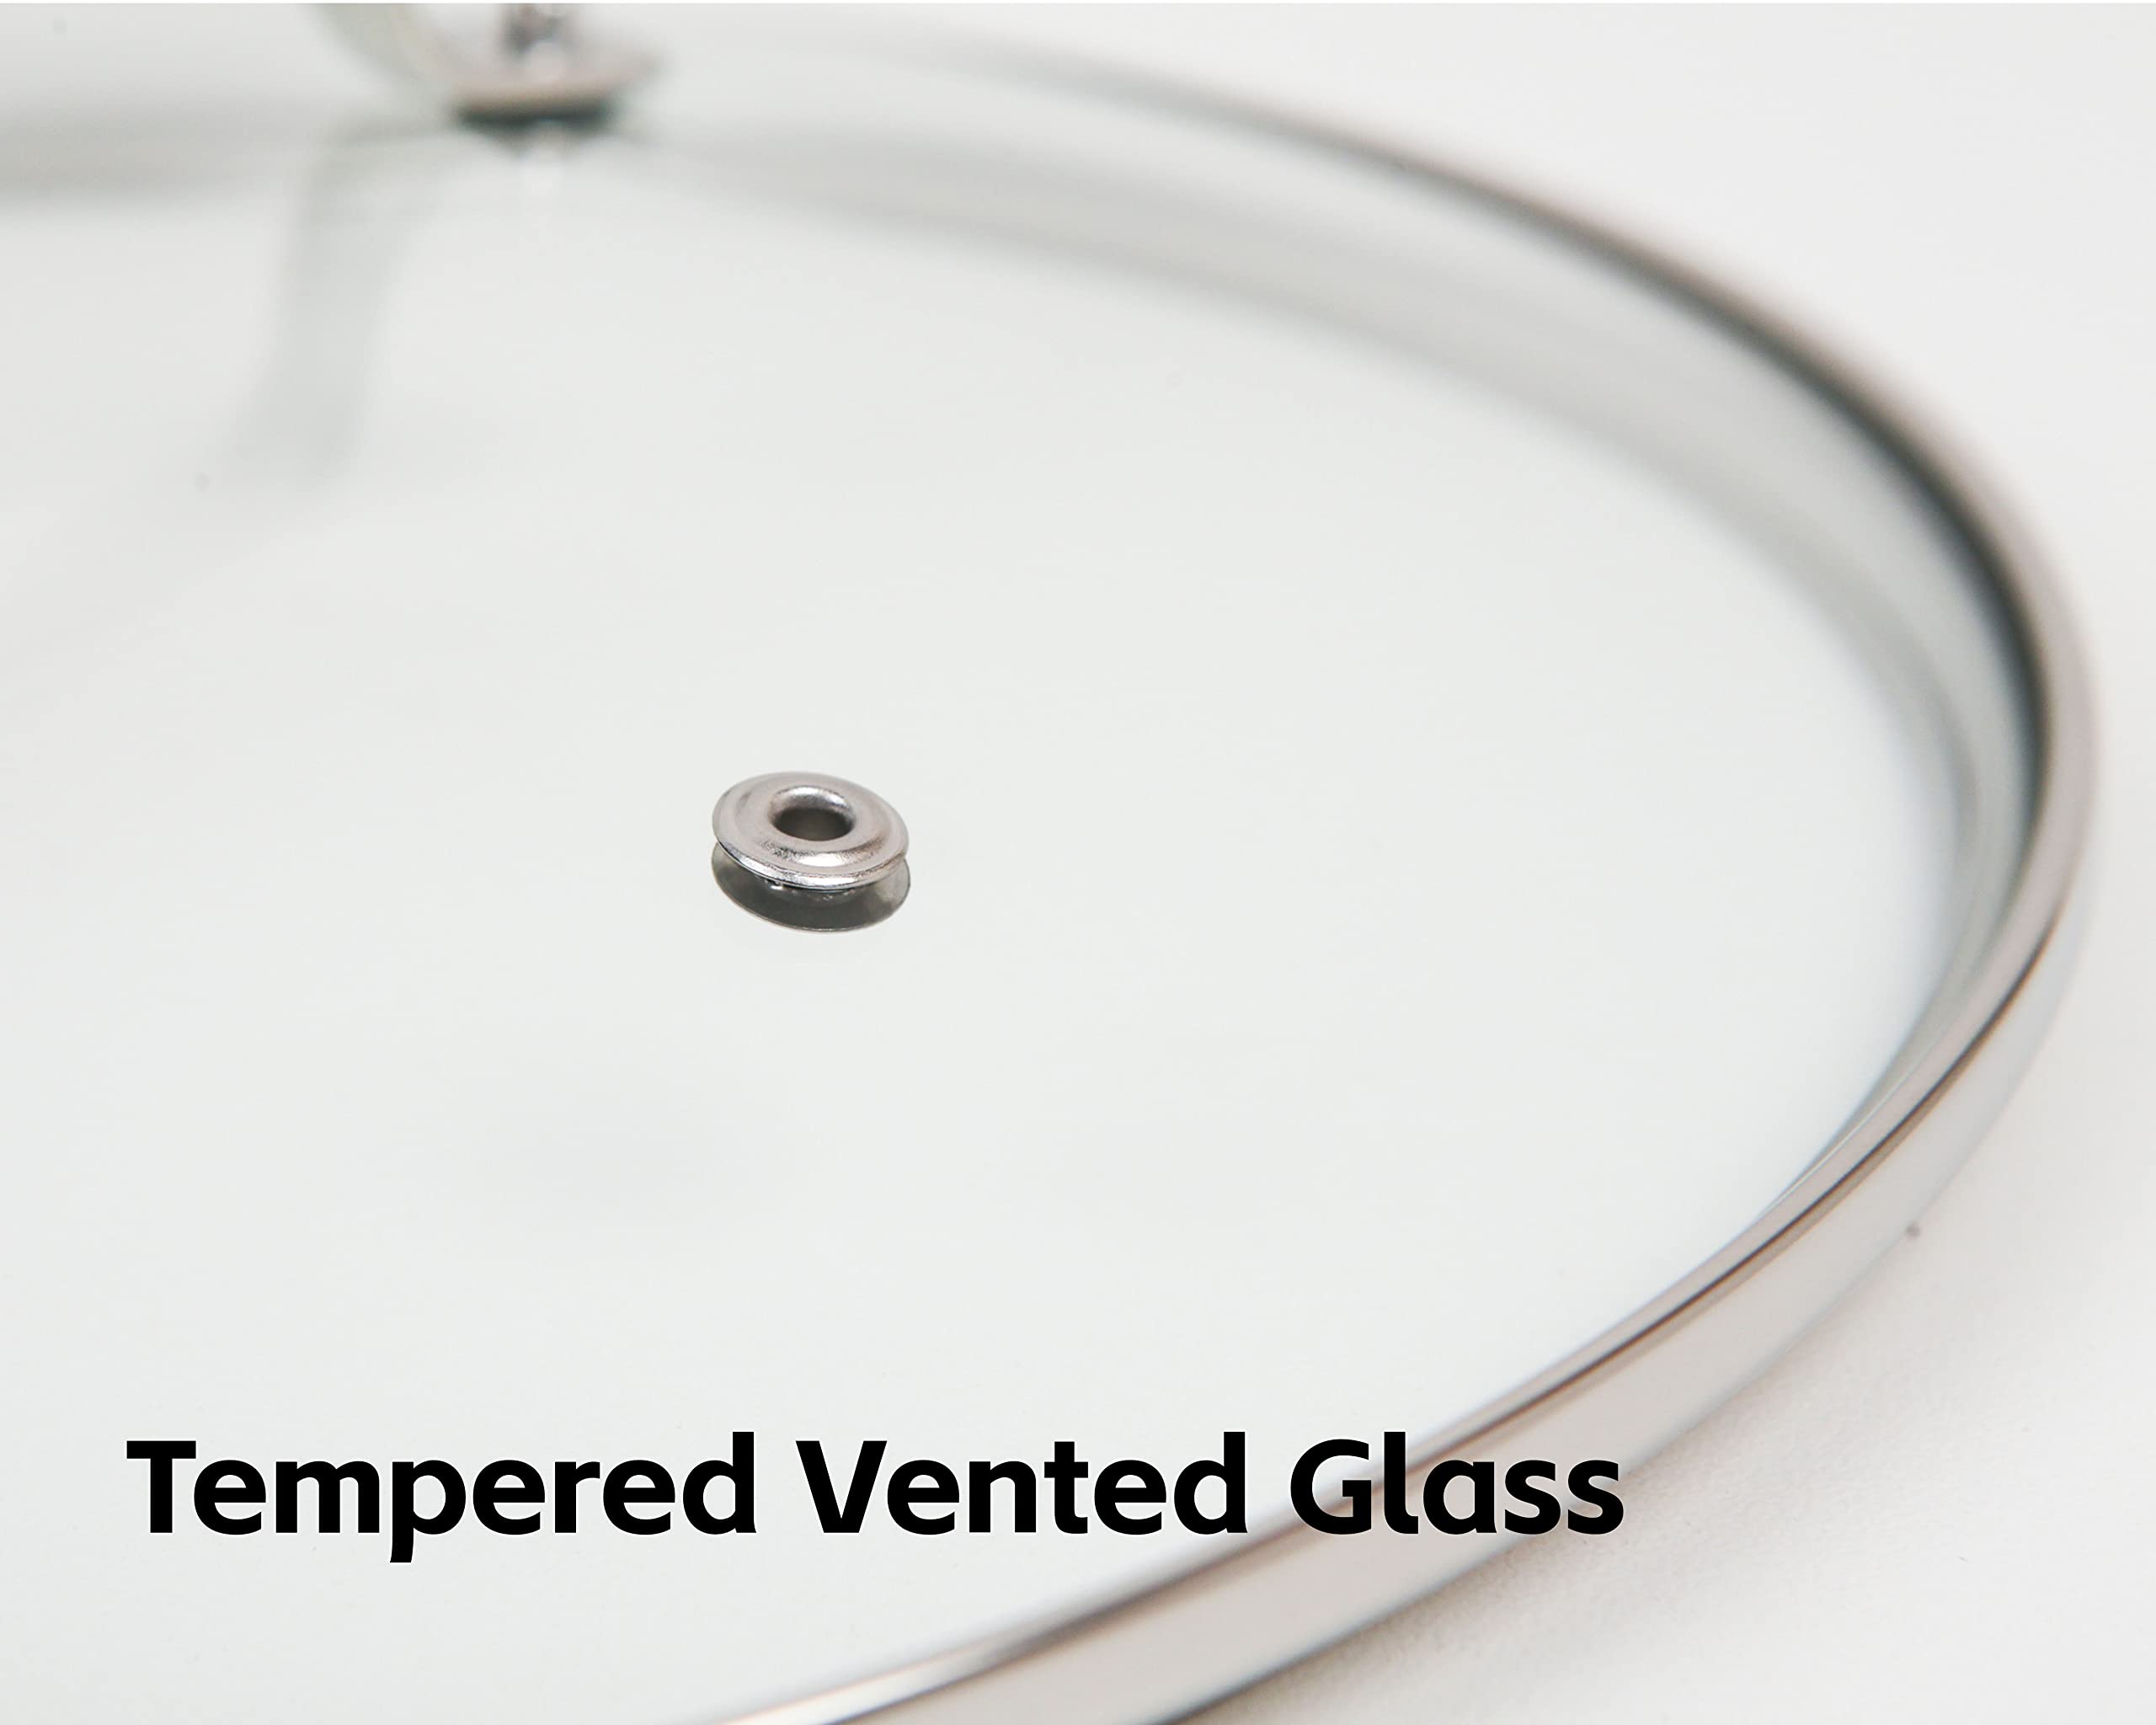 Nuwave 11.5” Tempered Vented Glass Lid, Shatter-Resistant, Oven Safe, Dishwasher Safe, Stainless-Steel Rim and Handle